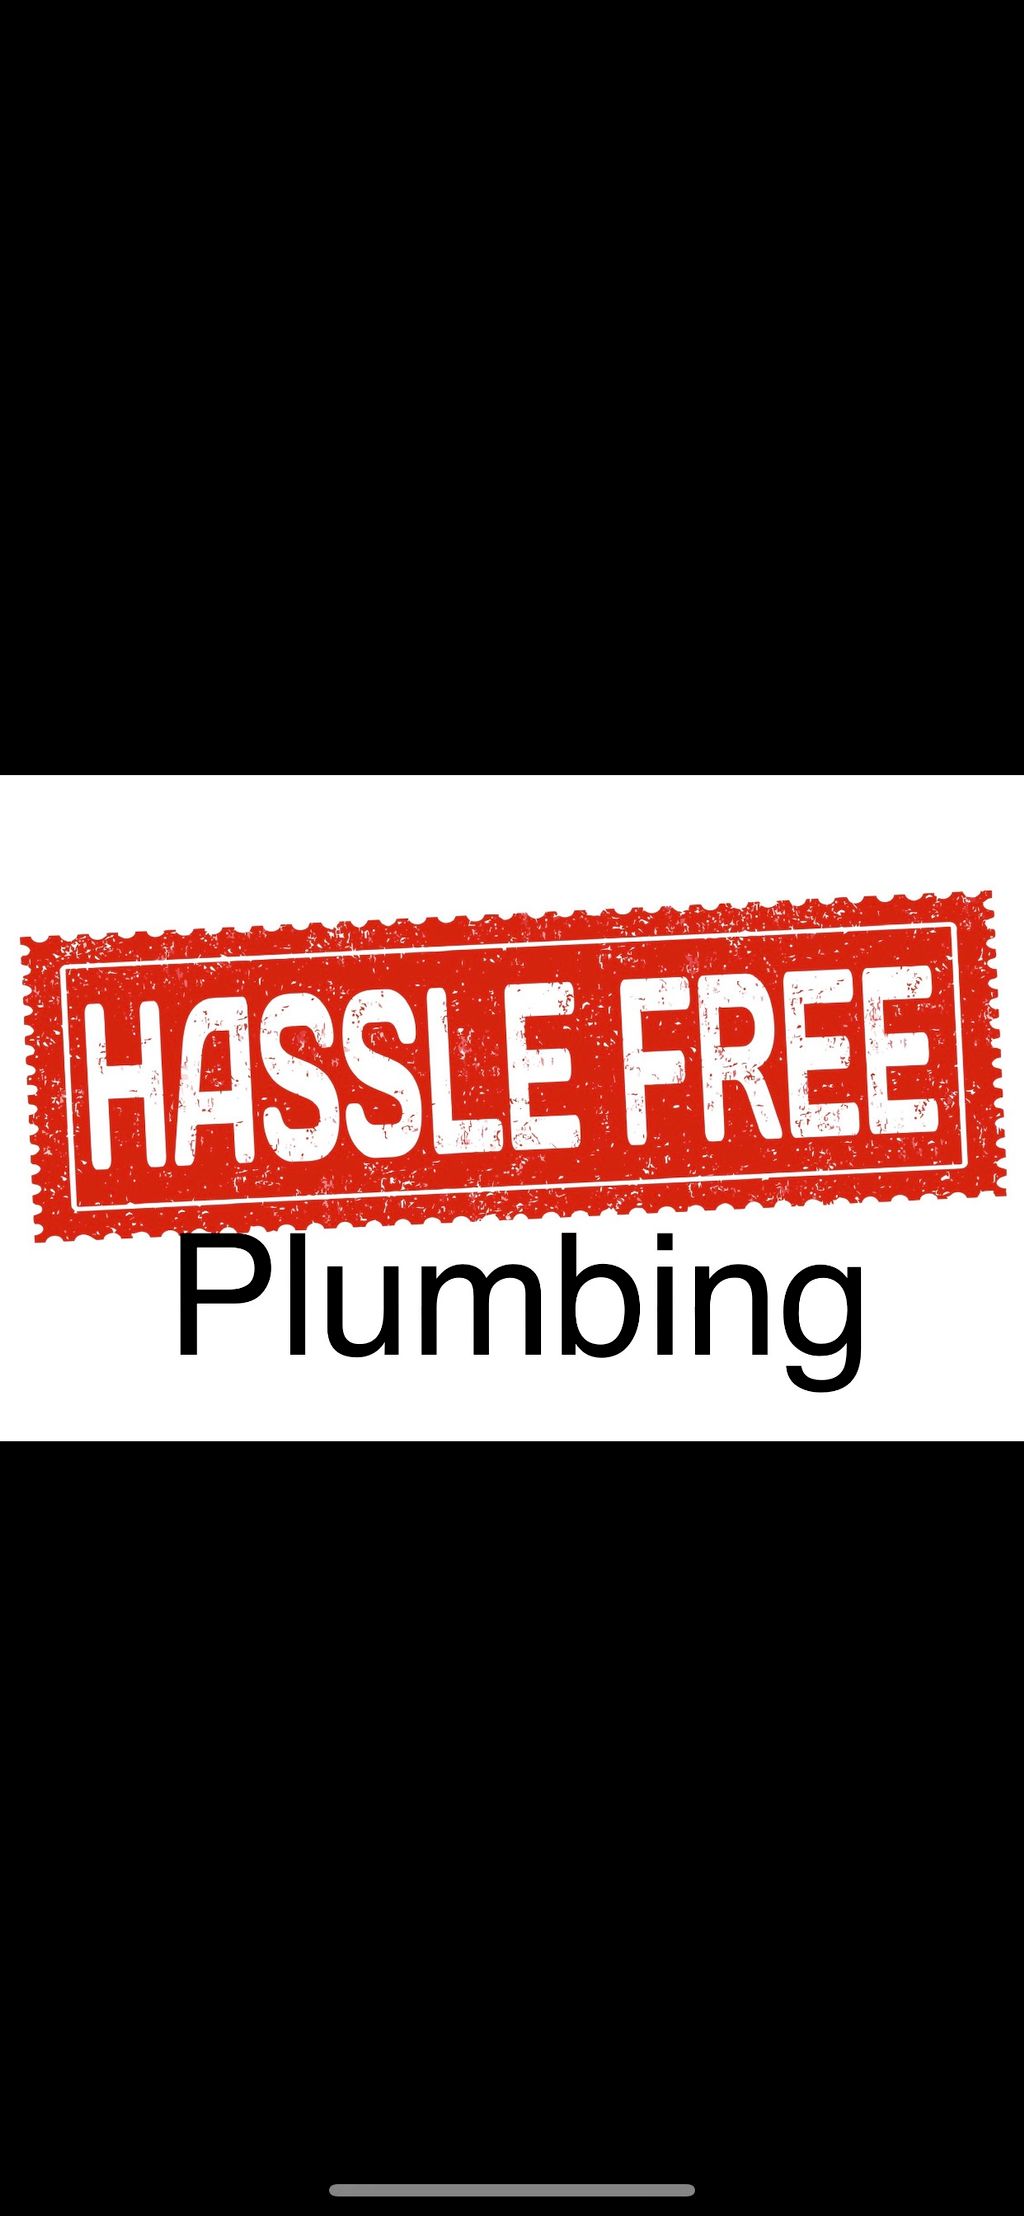 Hassle Free Plumbing